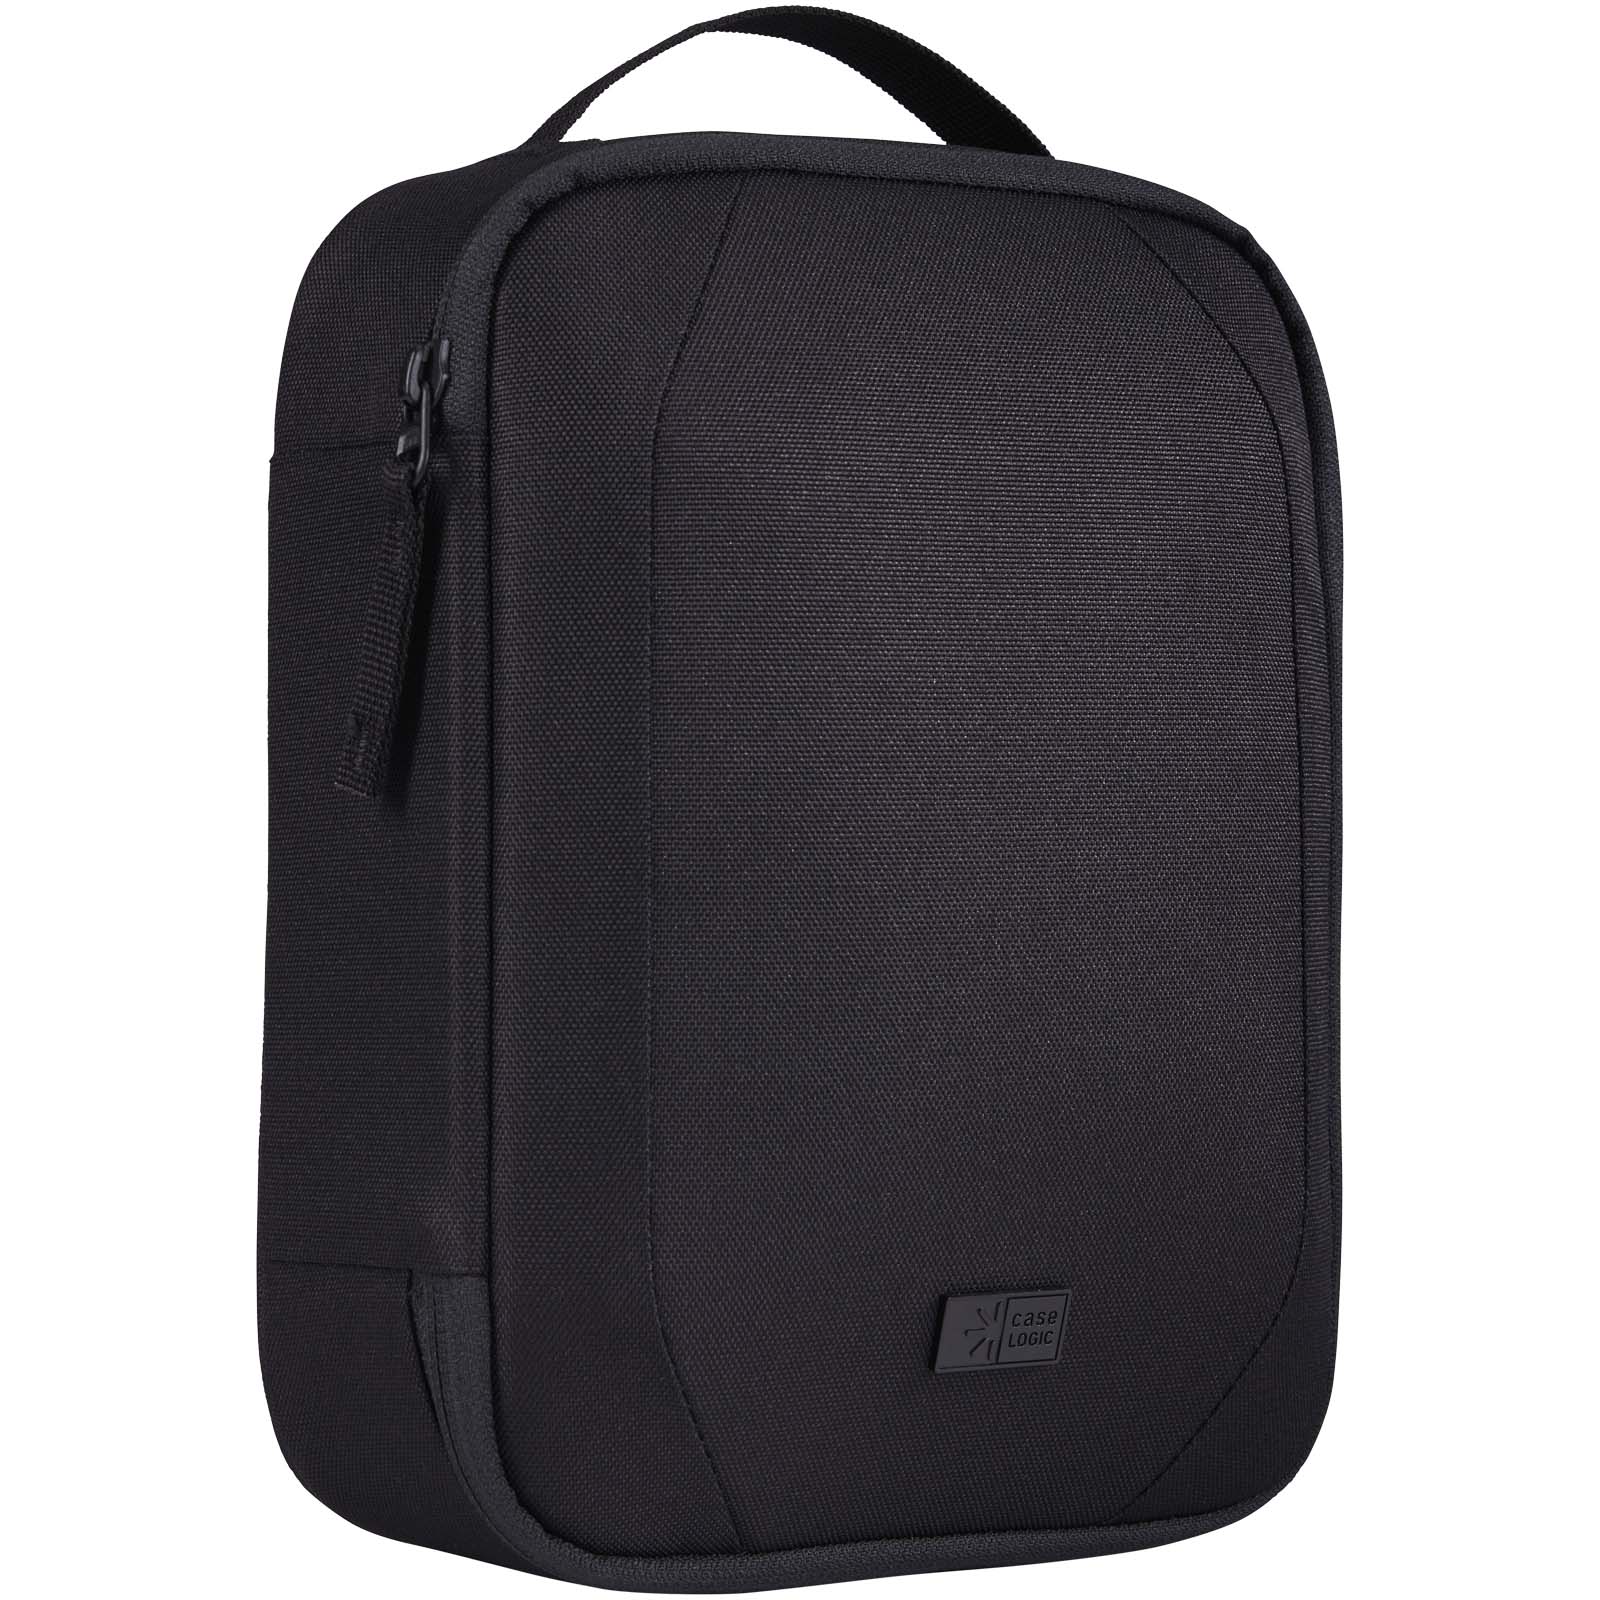 Advertising Travel Accessories - Case Logic Invigo accessories bag